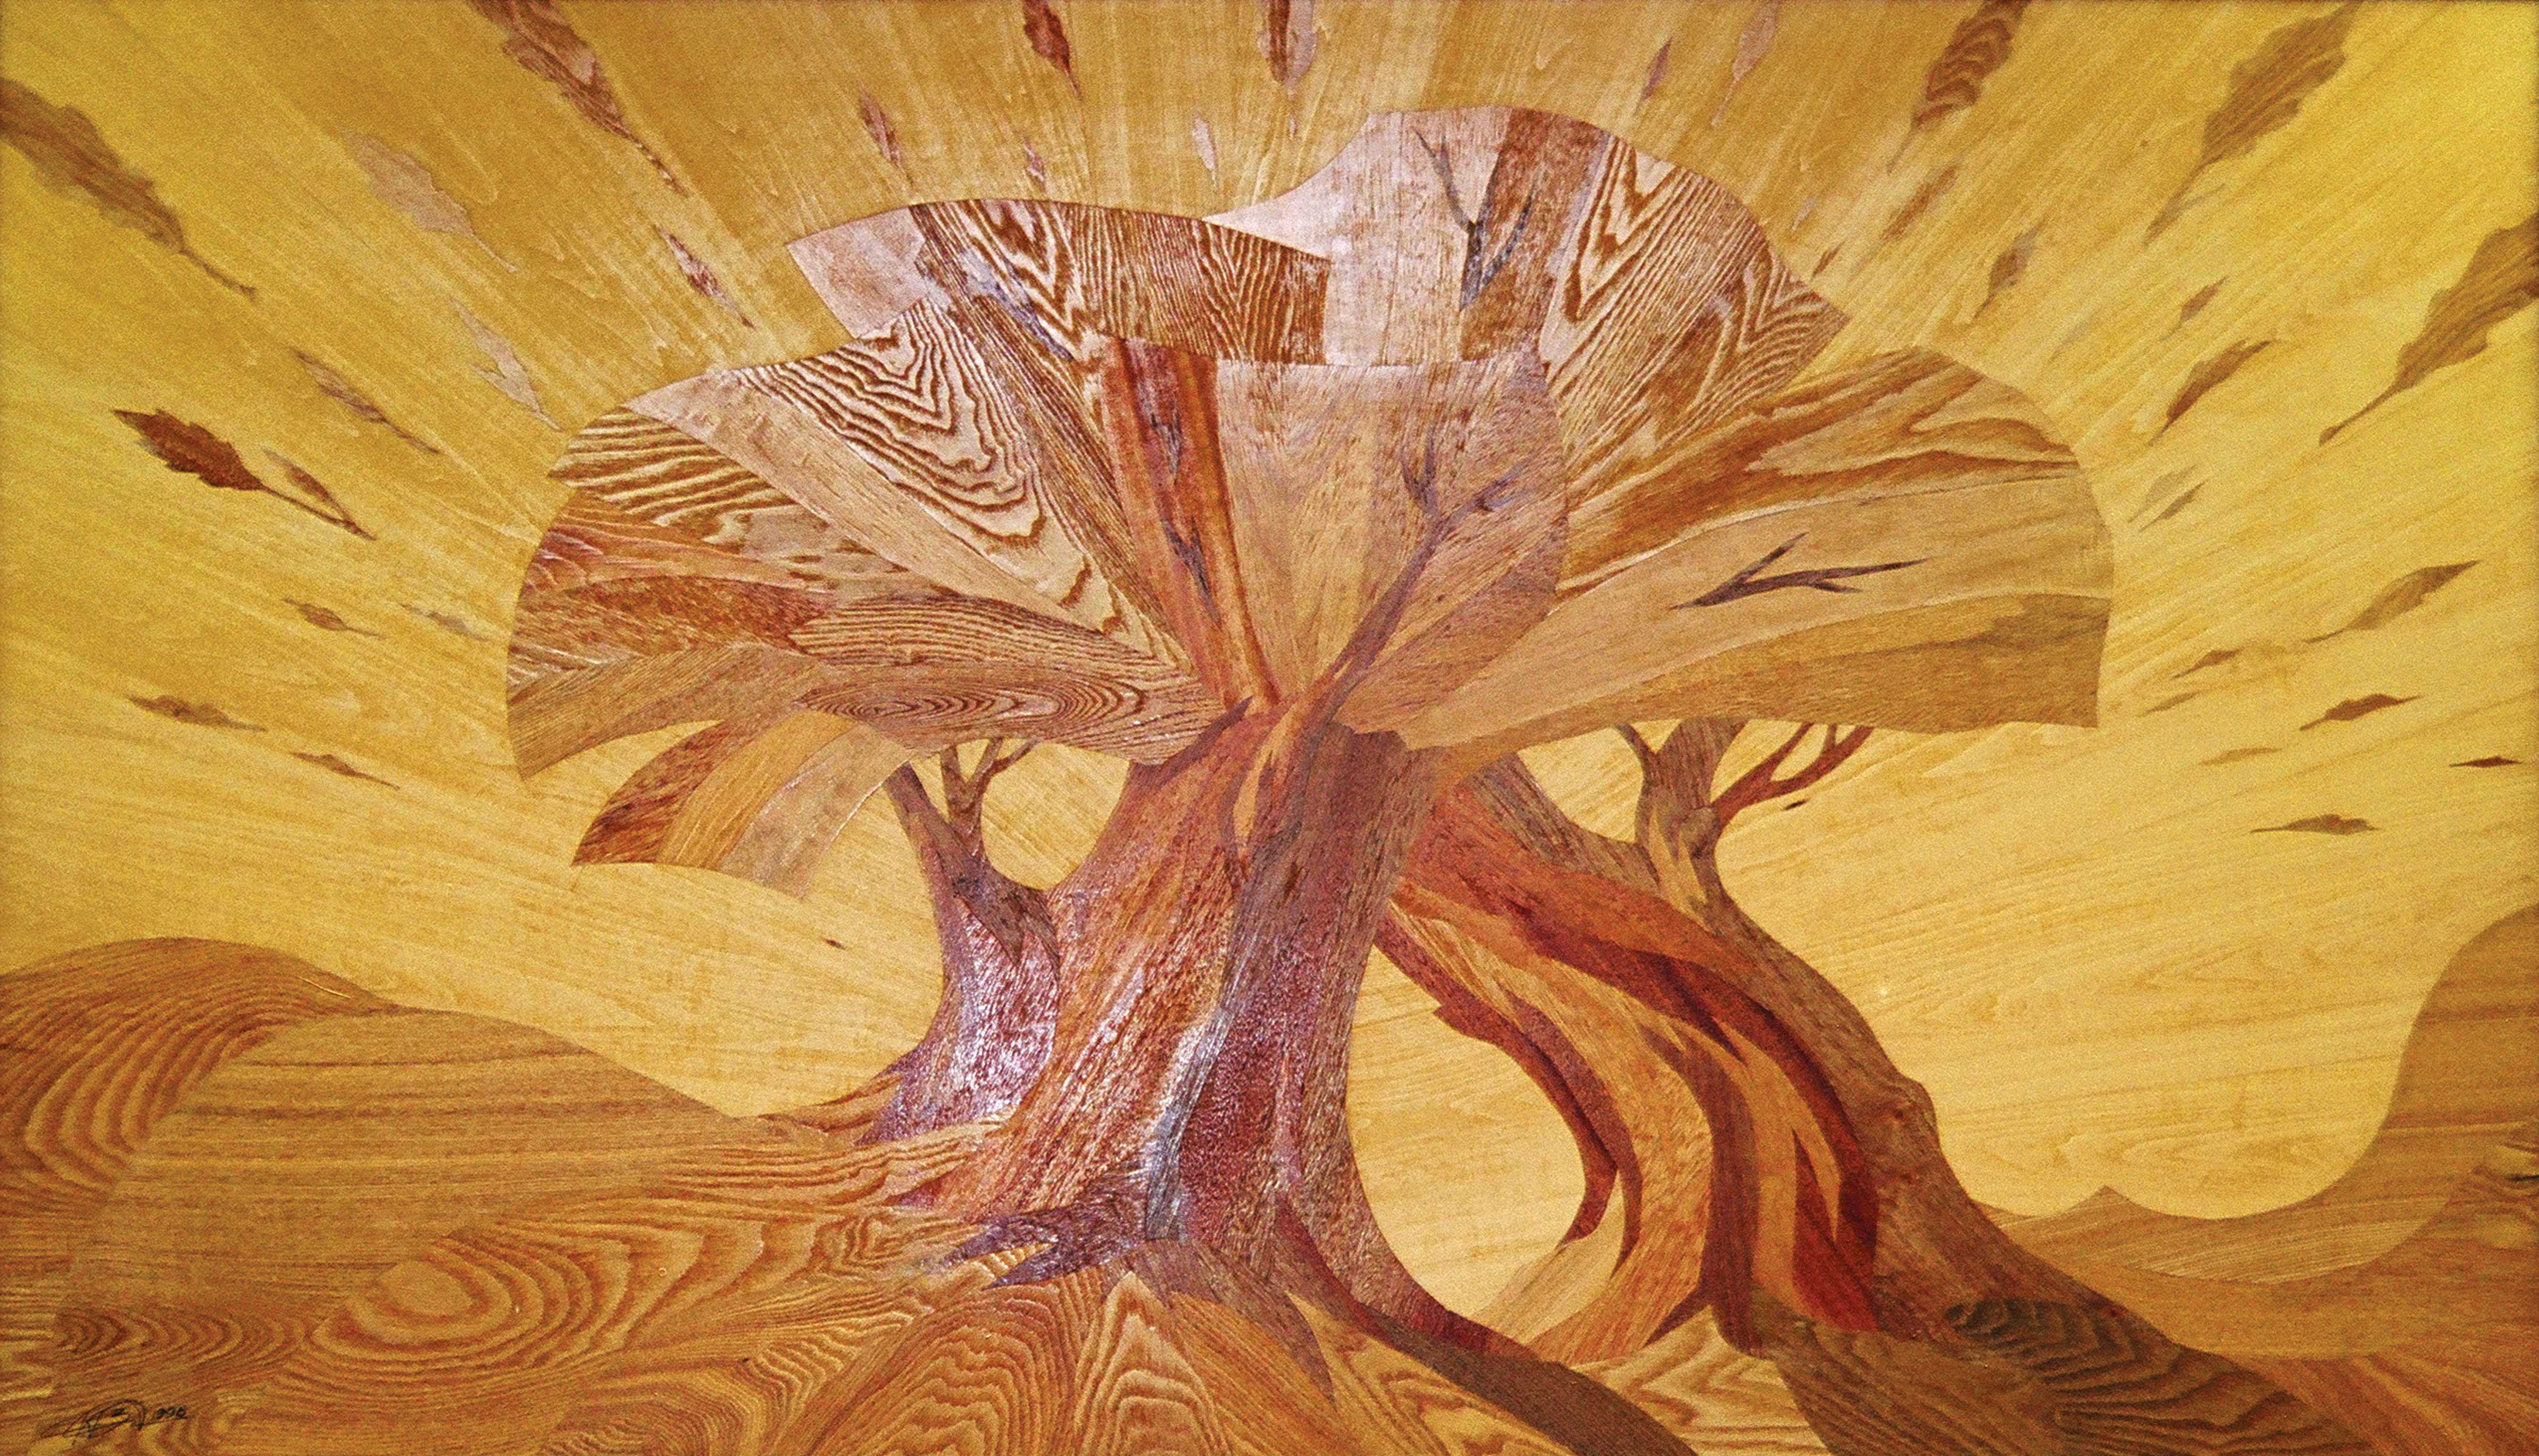 Мозаика по дереву своими руками на примере декоративно-прикладного искусства – интарсия, блочная мозаика, инкрустация и резьба по дереву